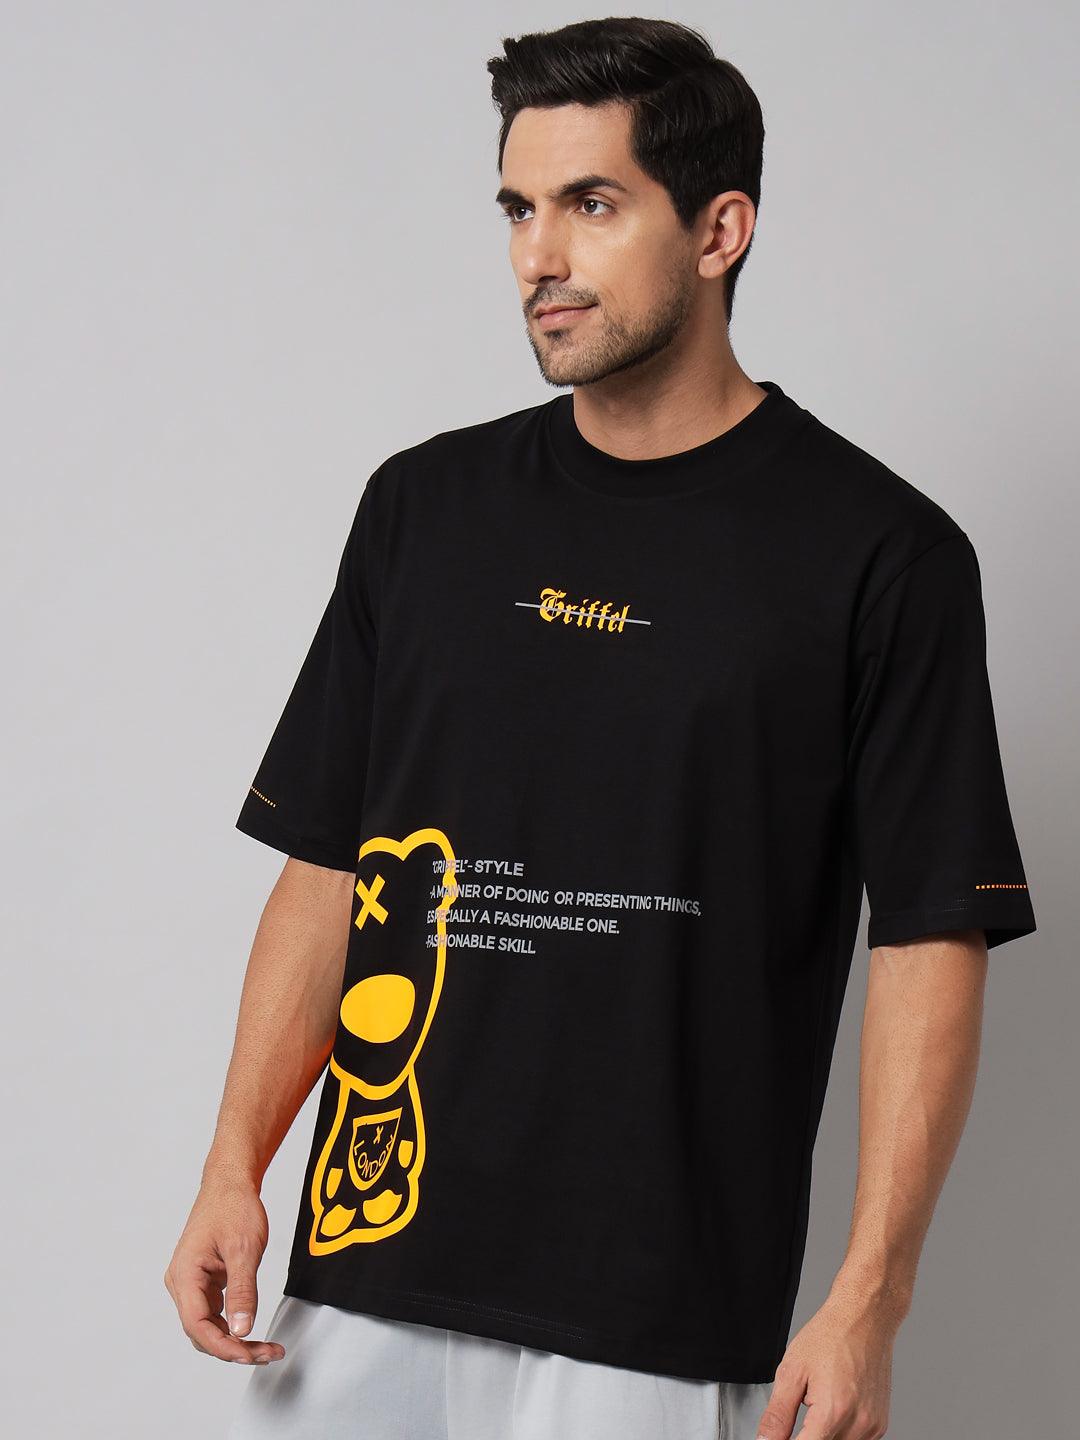 GRIFFEL Men Placement Print Black Regular fit T-shirt - griffel